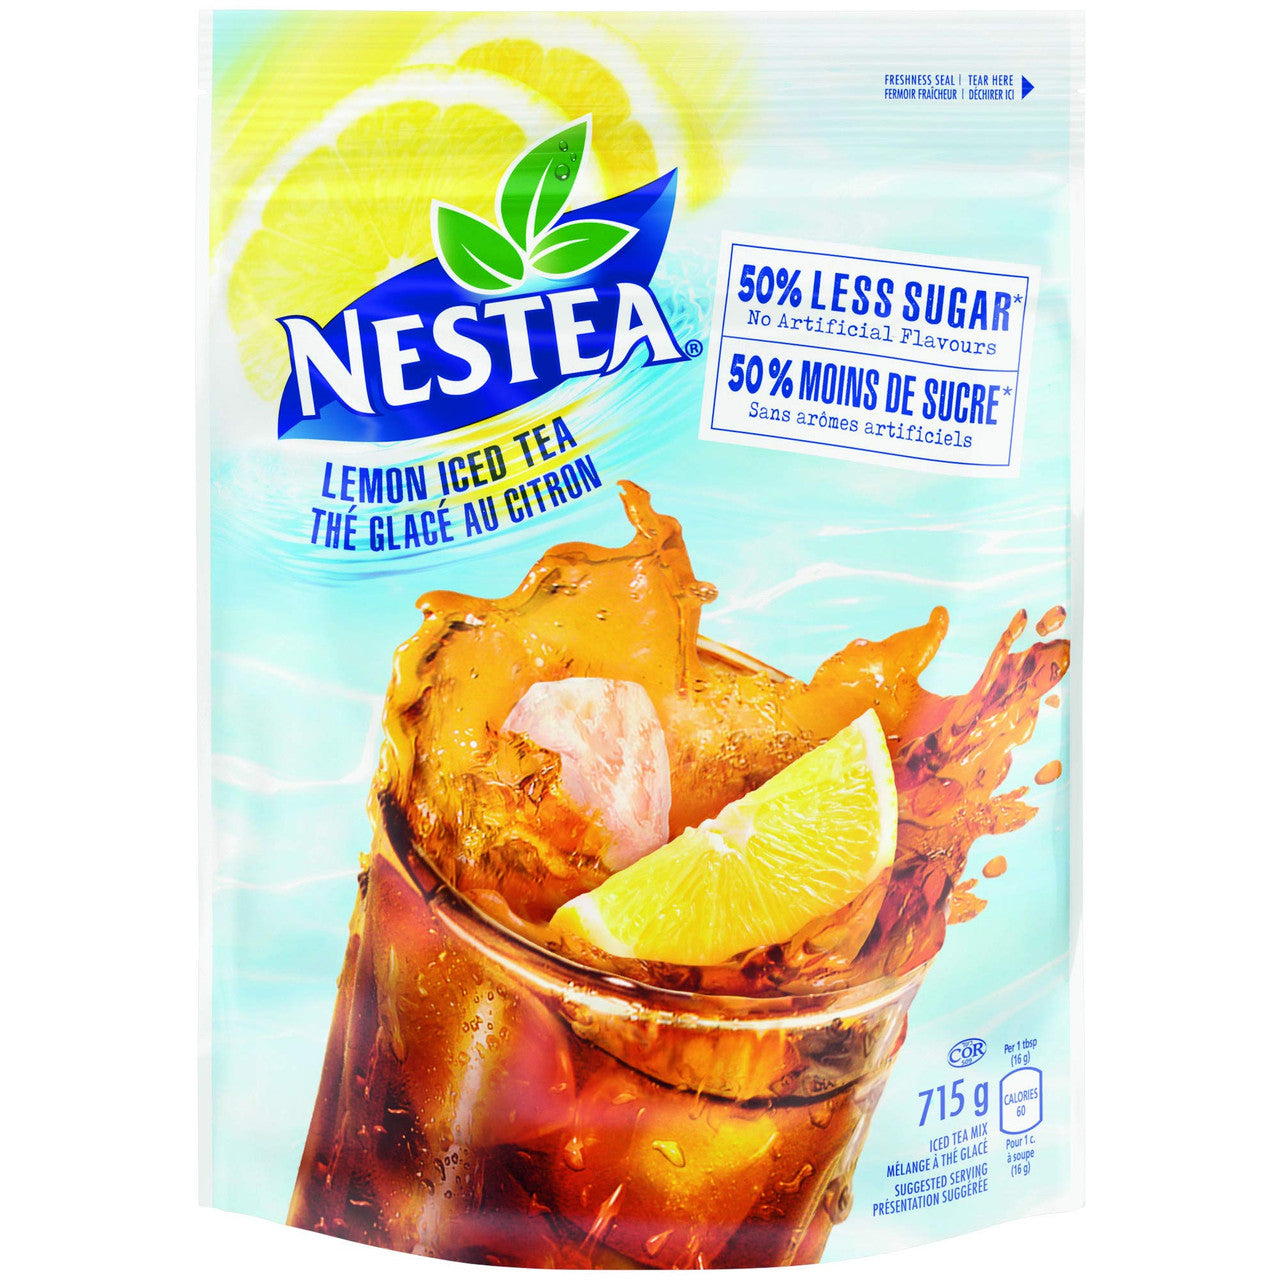 NESTEA Lemon Iced Tea Mix, 715g/25.2 oz., Pouch {Imported from Canada}